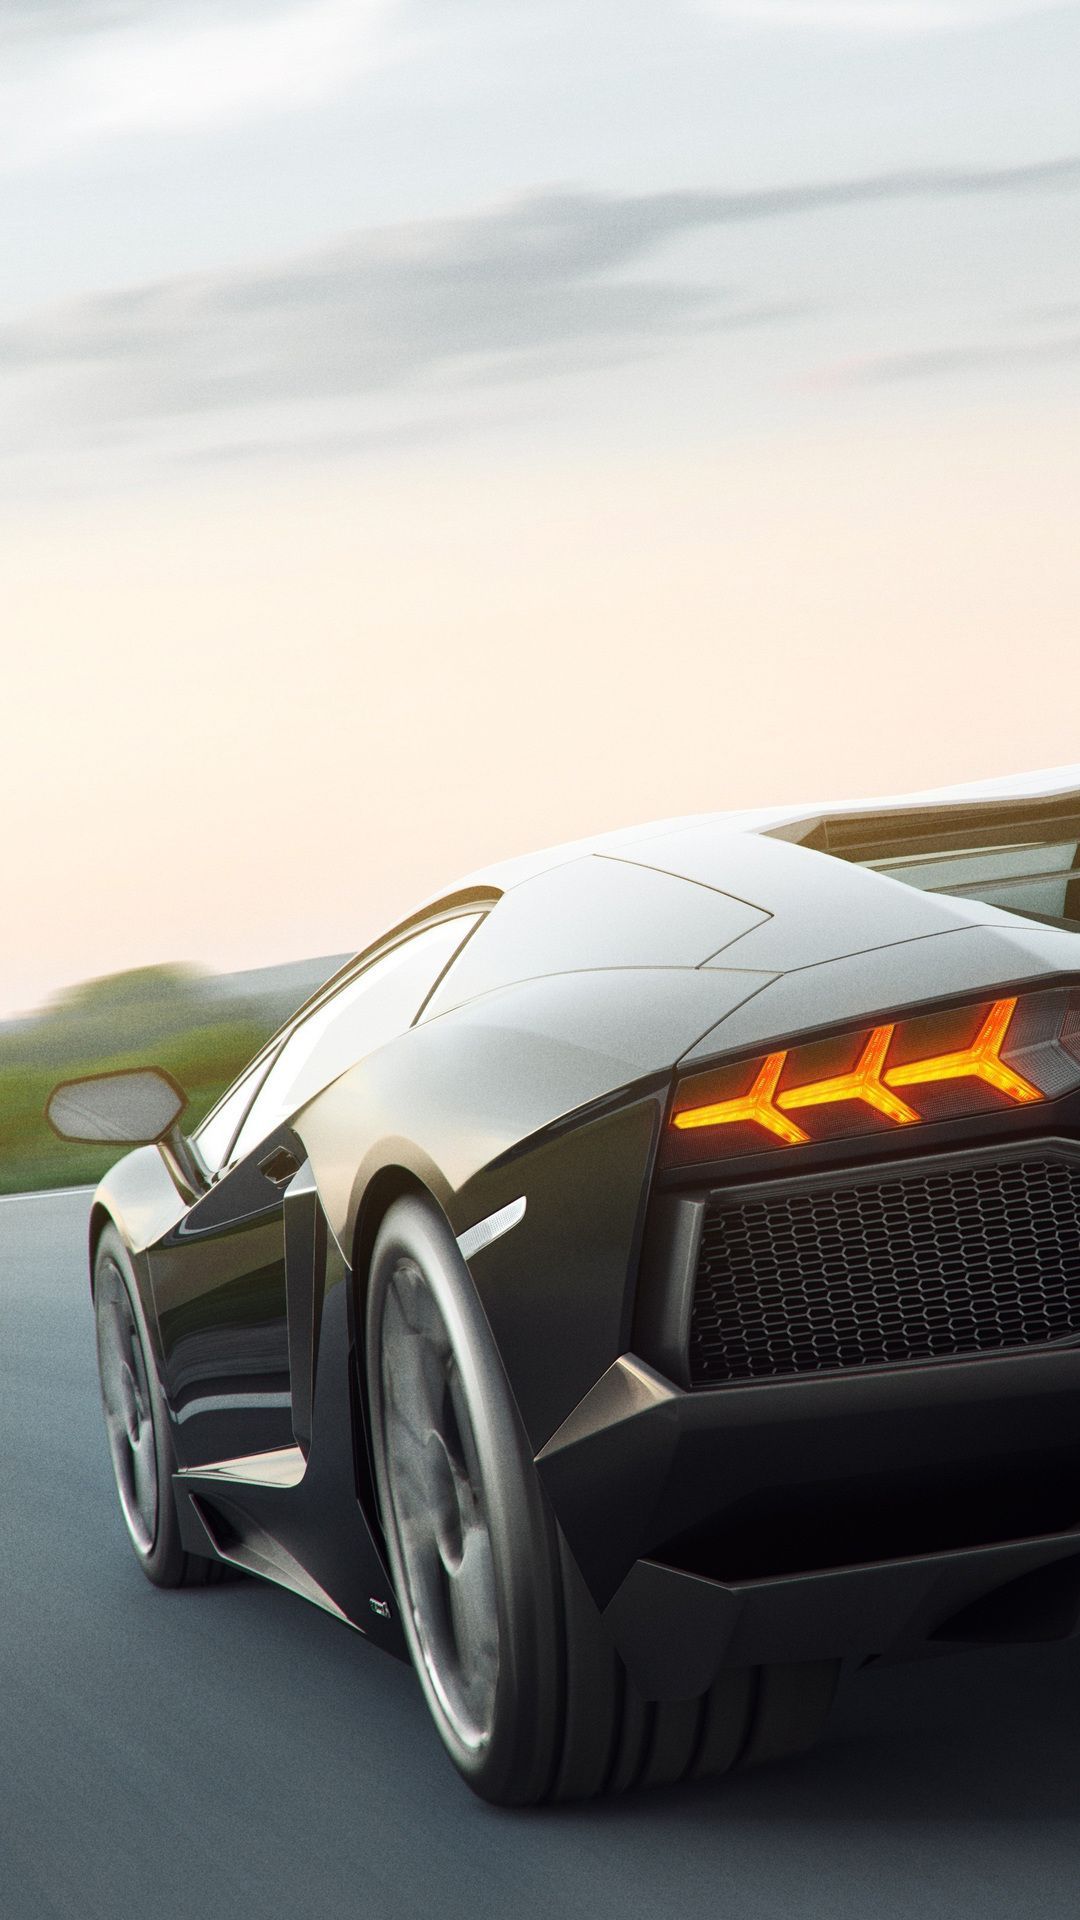 Cars #Black Lamborghini #wallpaper HD 4k background for android :). Android wallpaper cars, Lamborghini wallpaper iphone, Black car wallpaper